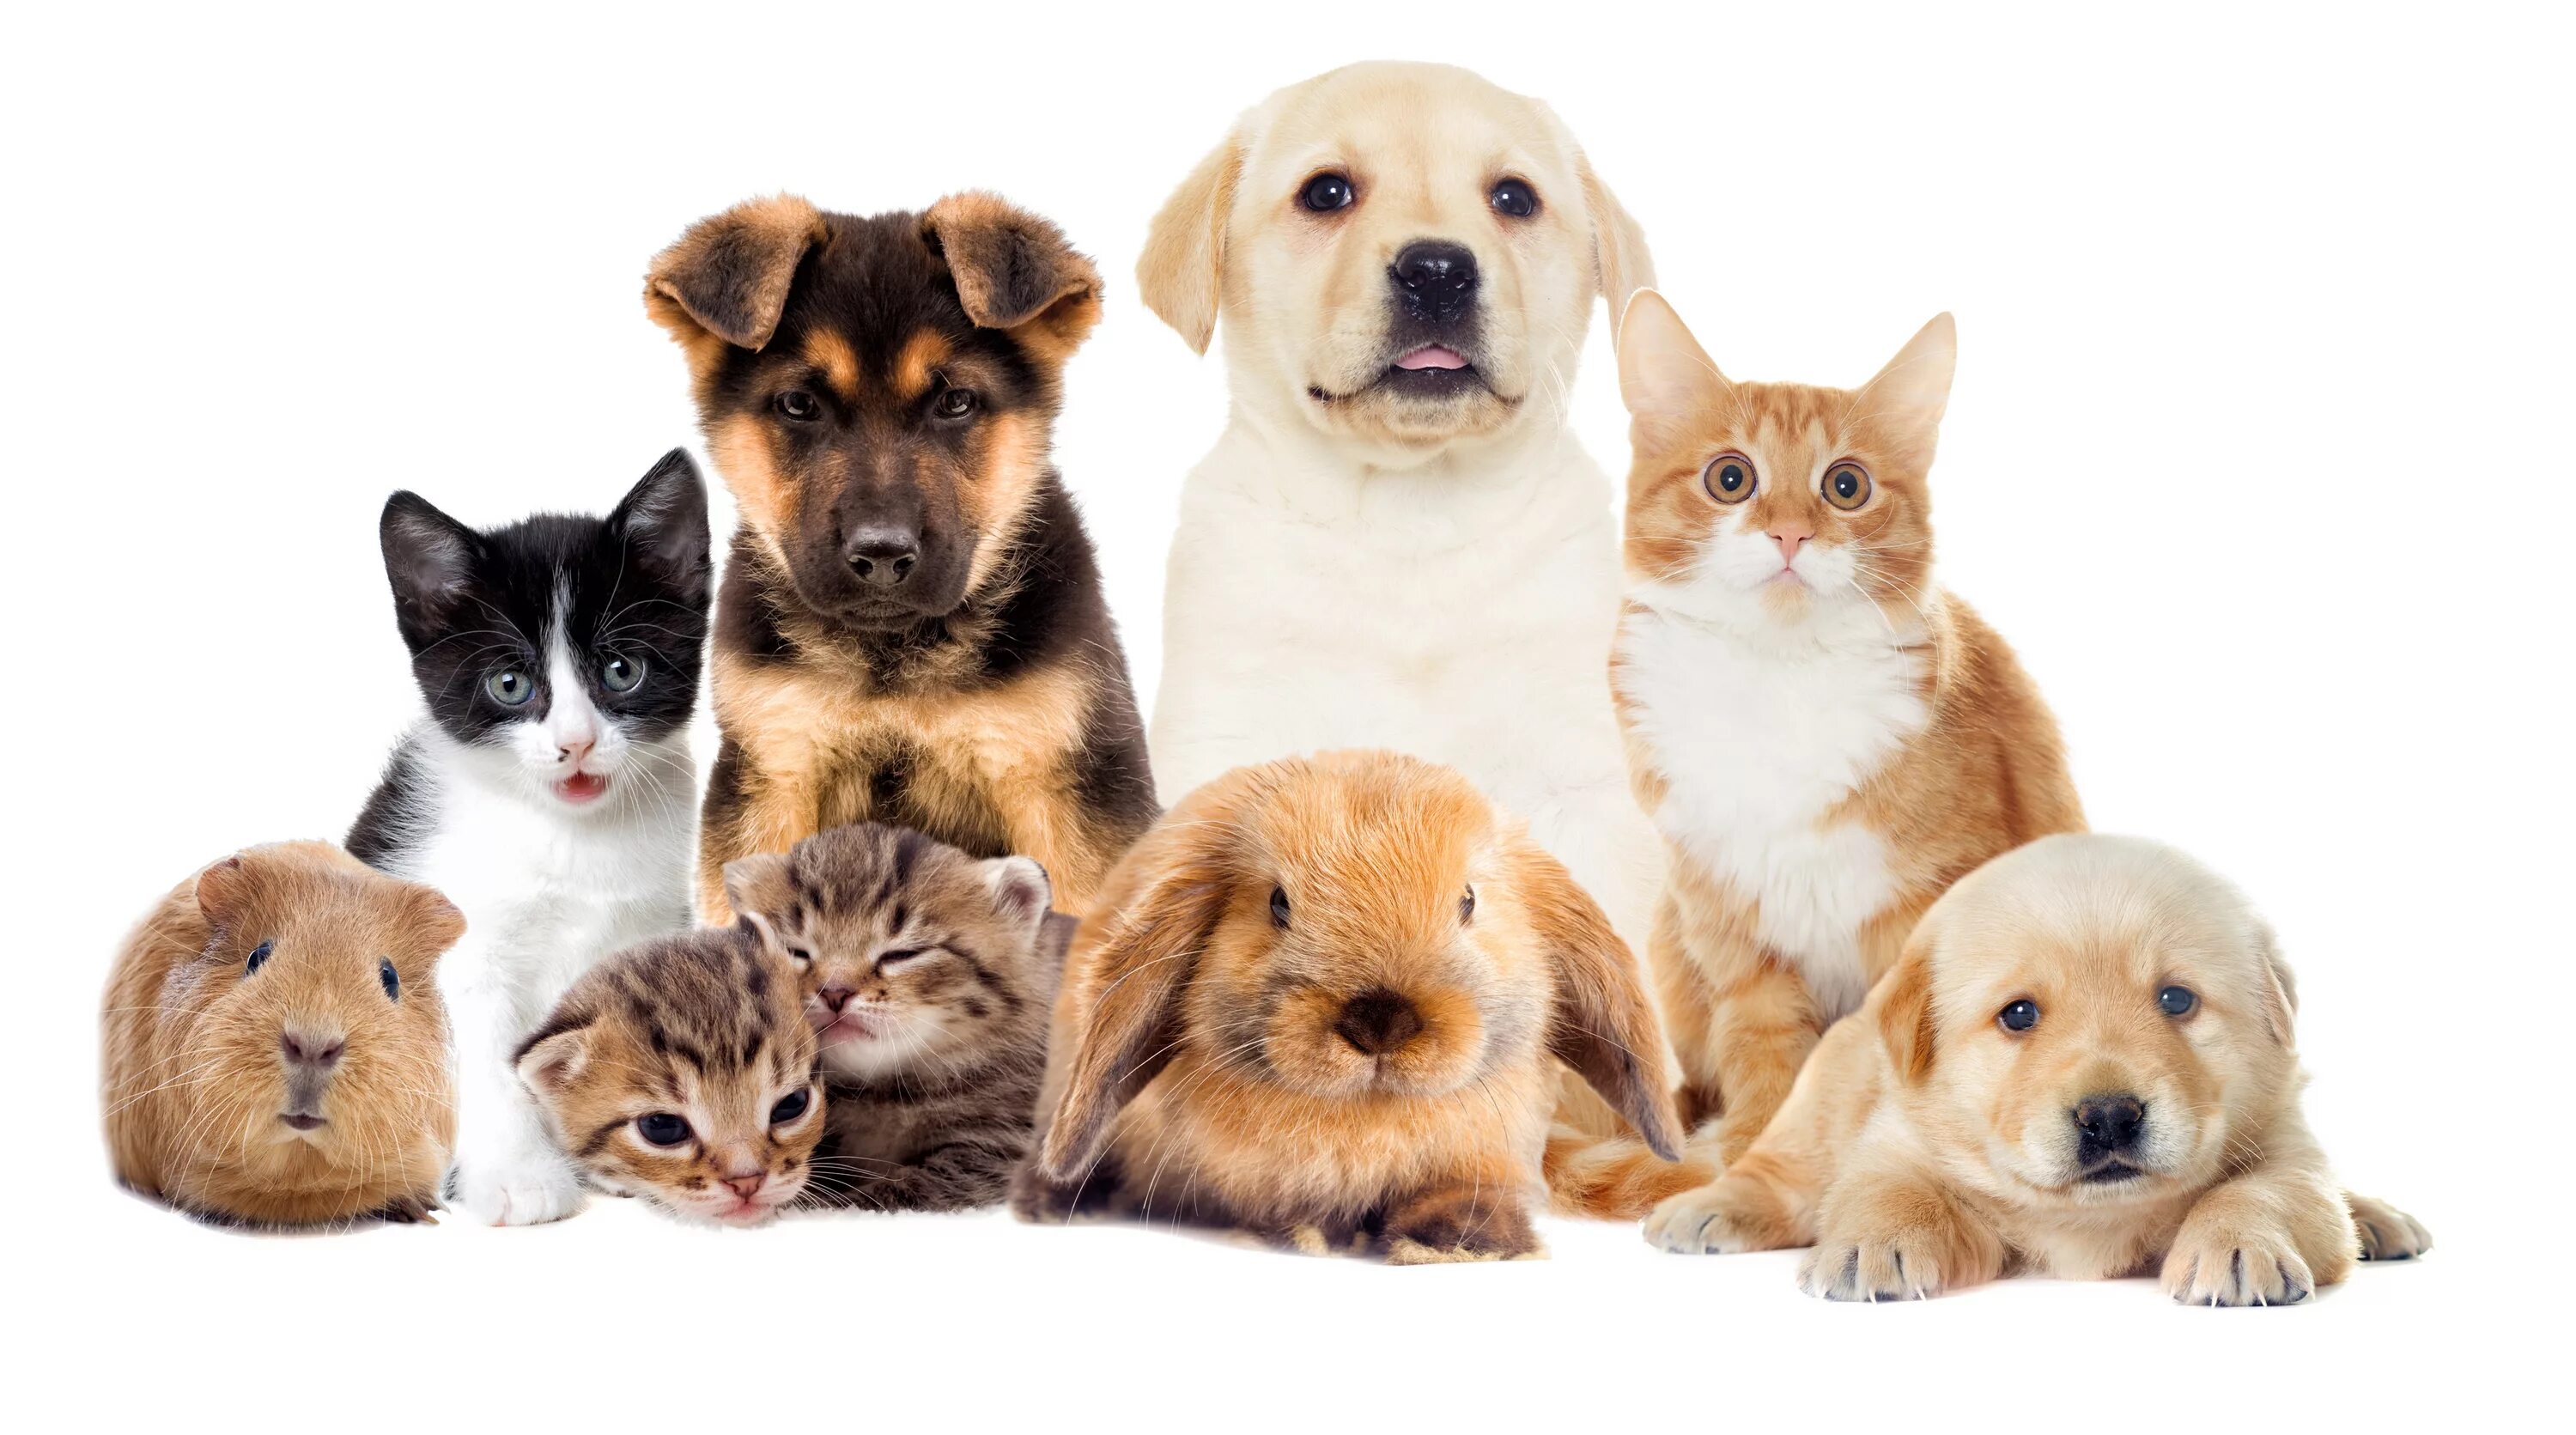 Pet group. Домашние животные. Кошки и собаки. Много домашних животных. Домашние животные вместе.